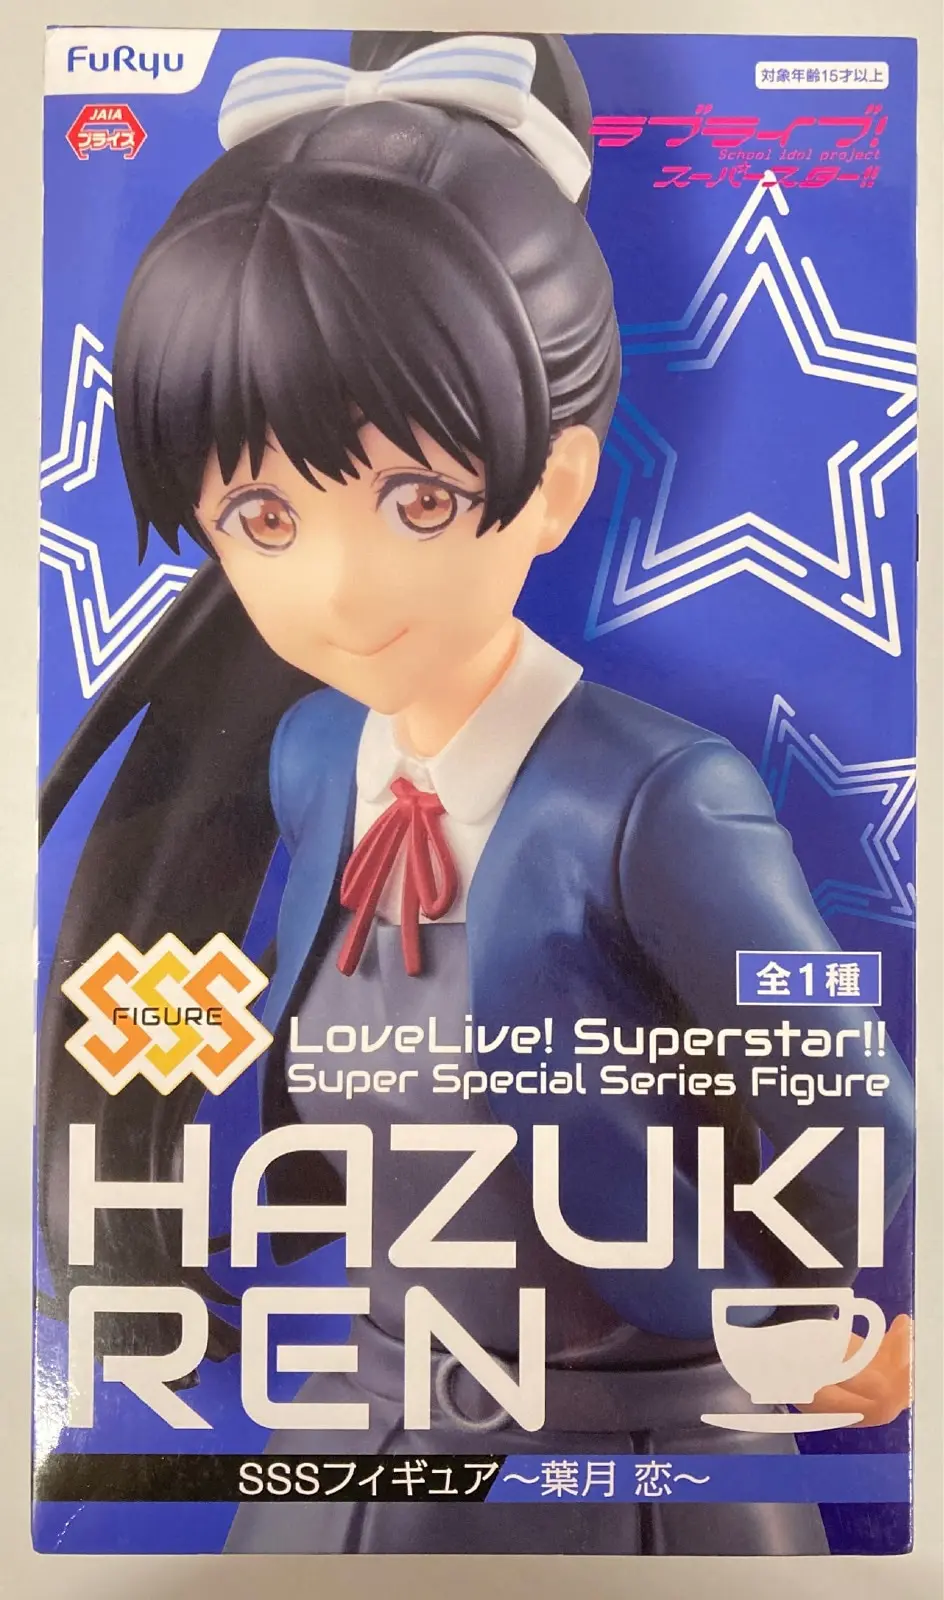 Super Special Series - Love Live! Superstar!! / Hazuki Ren